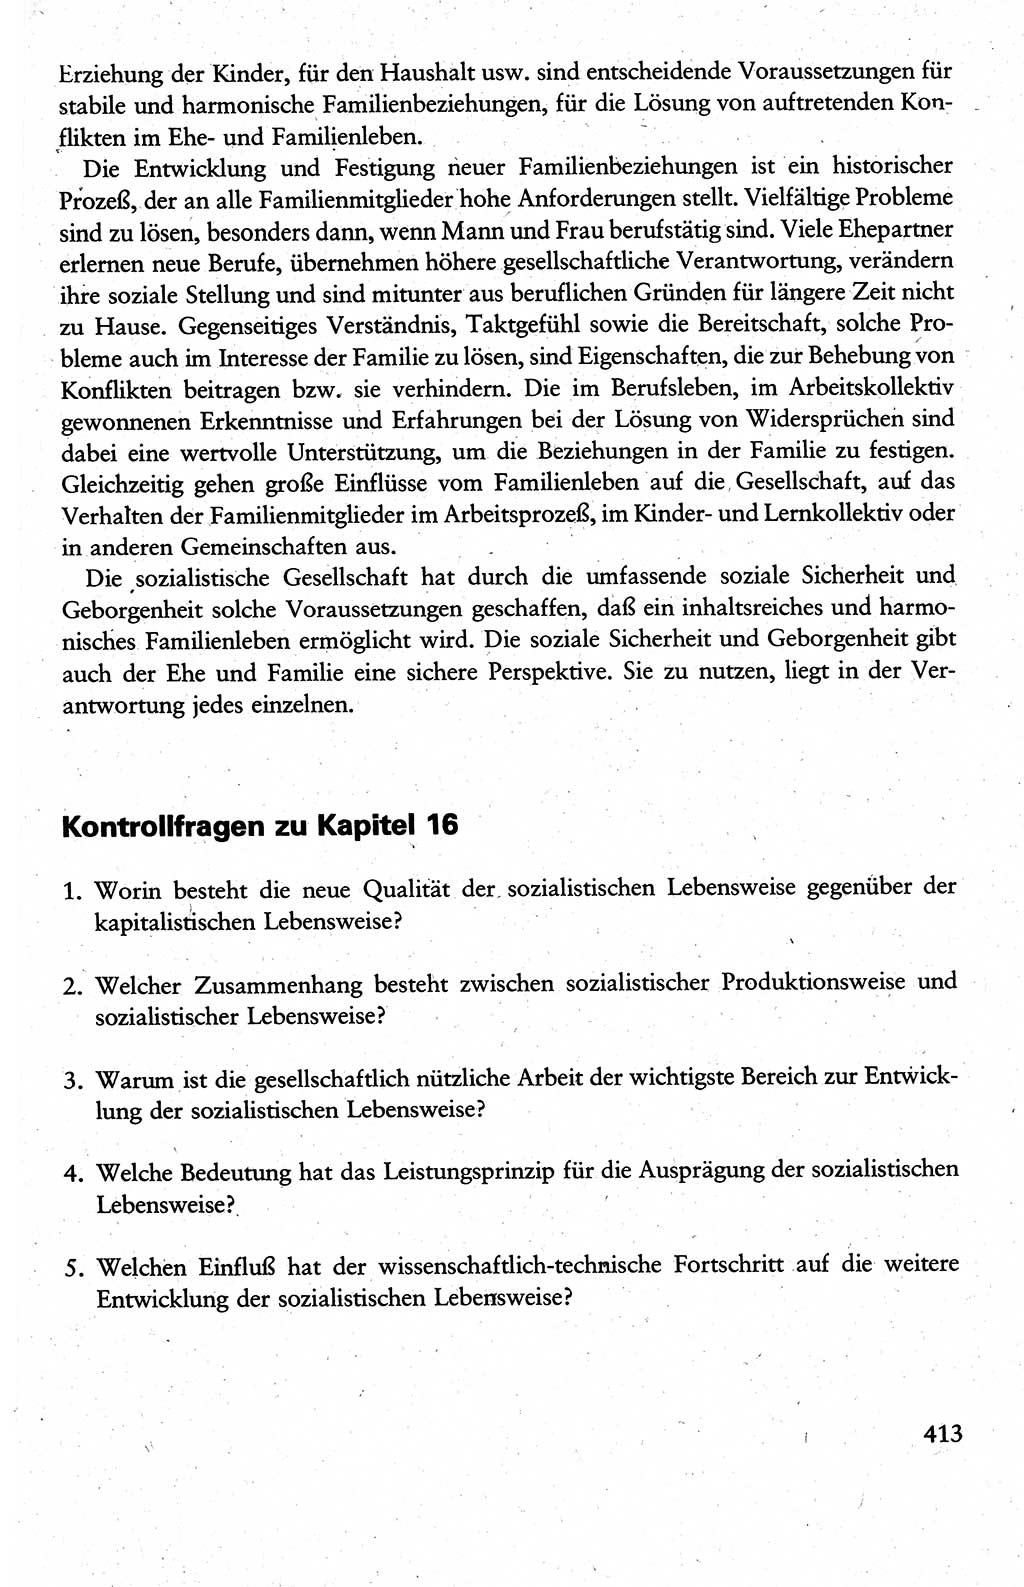 Wissenschaftlicher Kommunismus [Deutsche Demokratische Republik (DDR)], Lehrbuch für das marxistisch-leninistische Grundlagenstudium 1983, Seite 413 (Wiss. Komm. DDR Lb. 1983, S. 413)